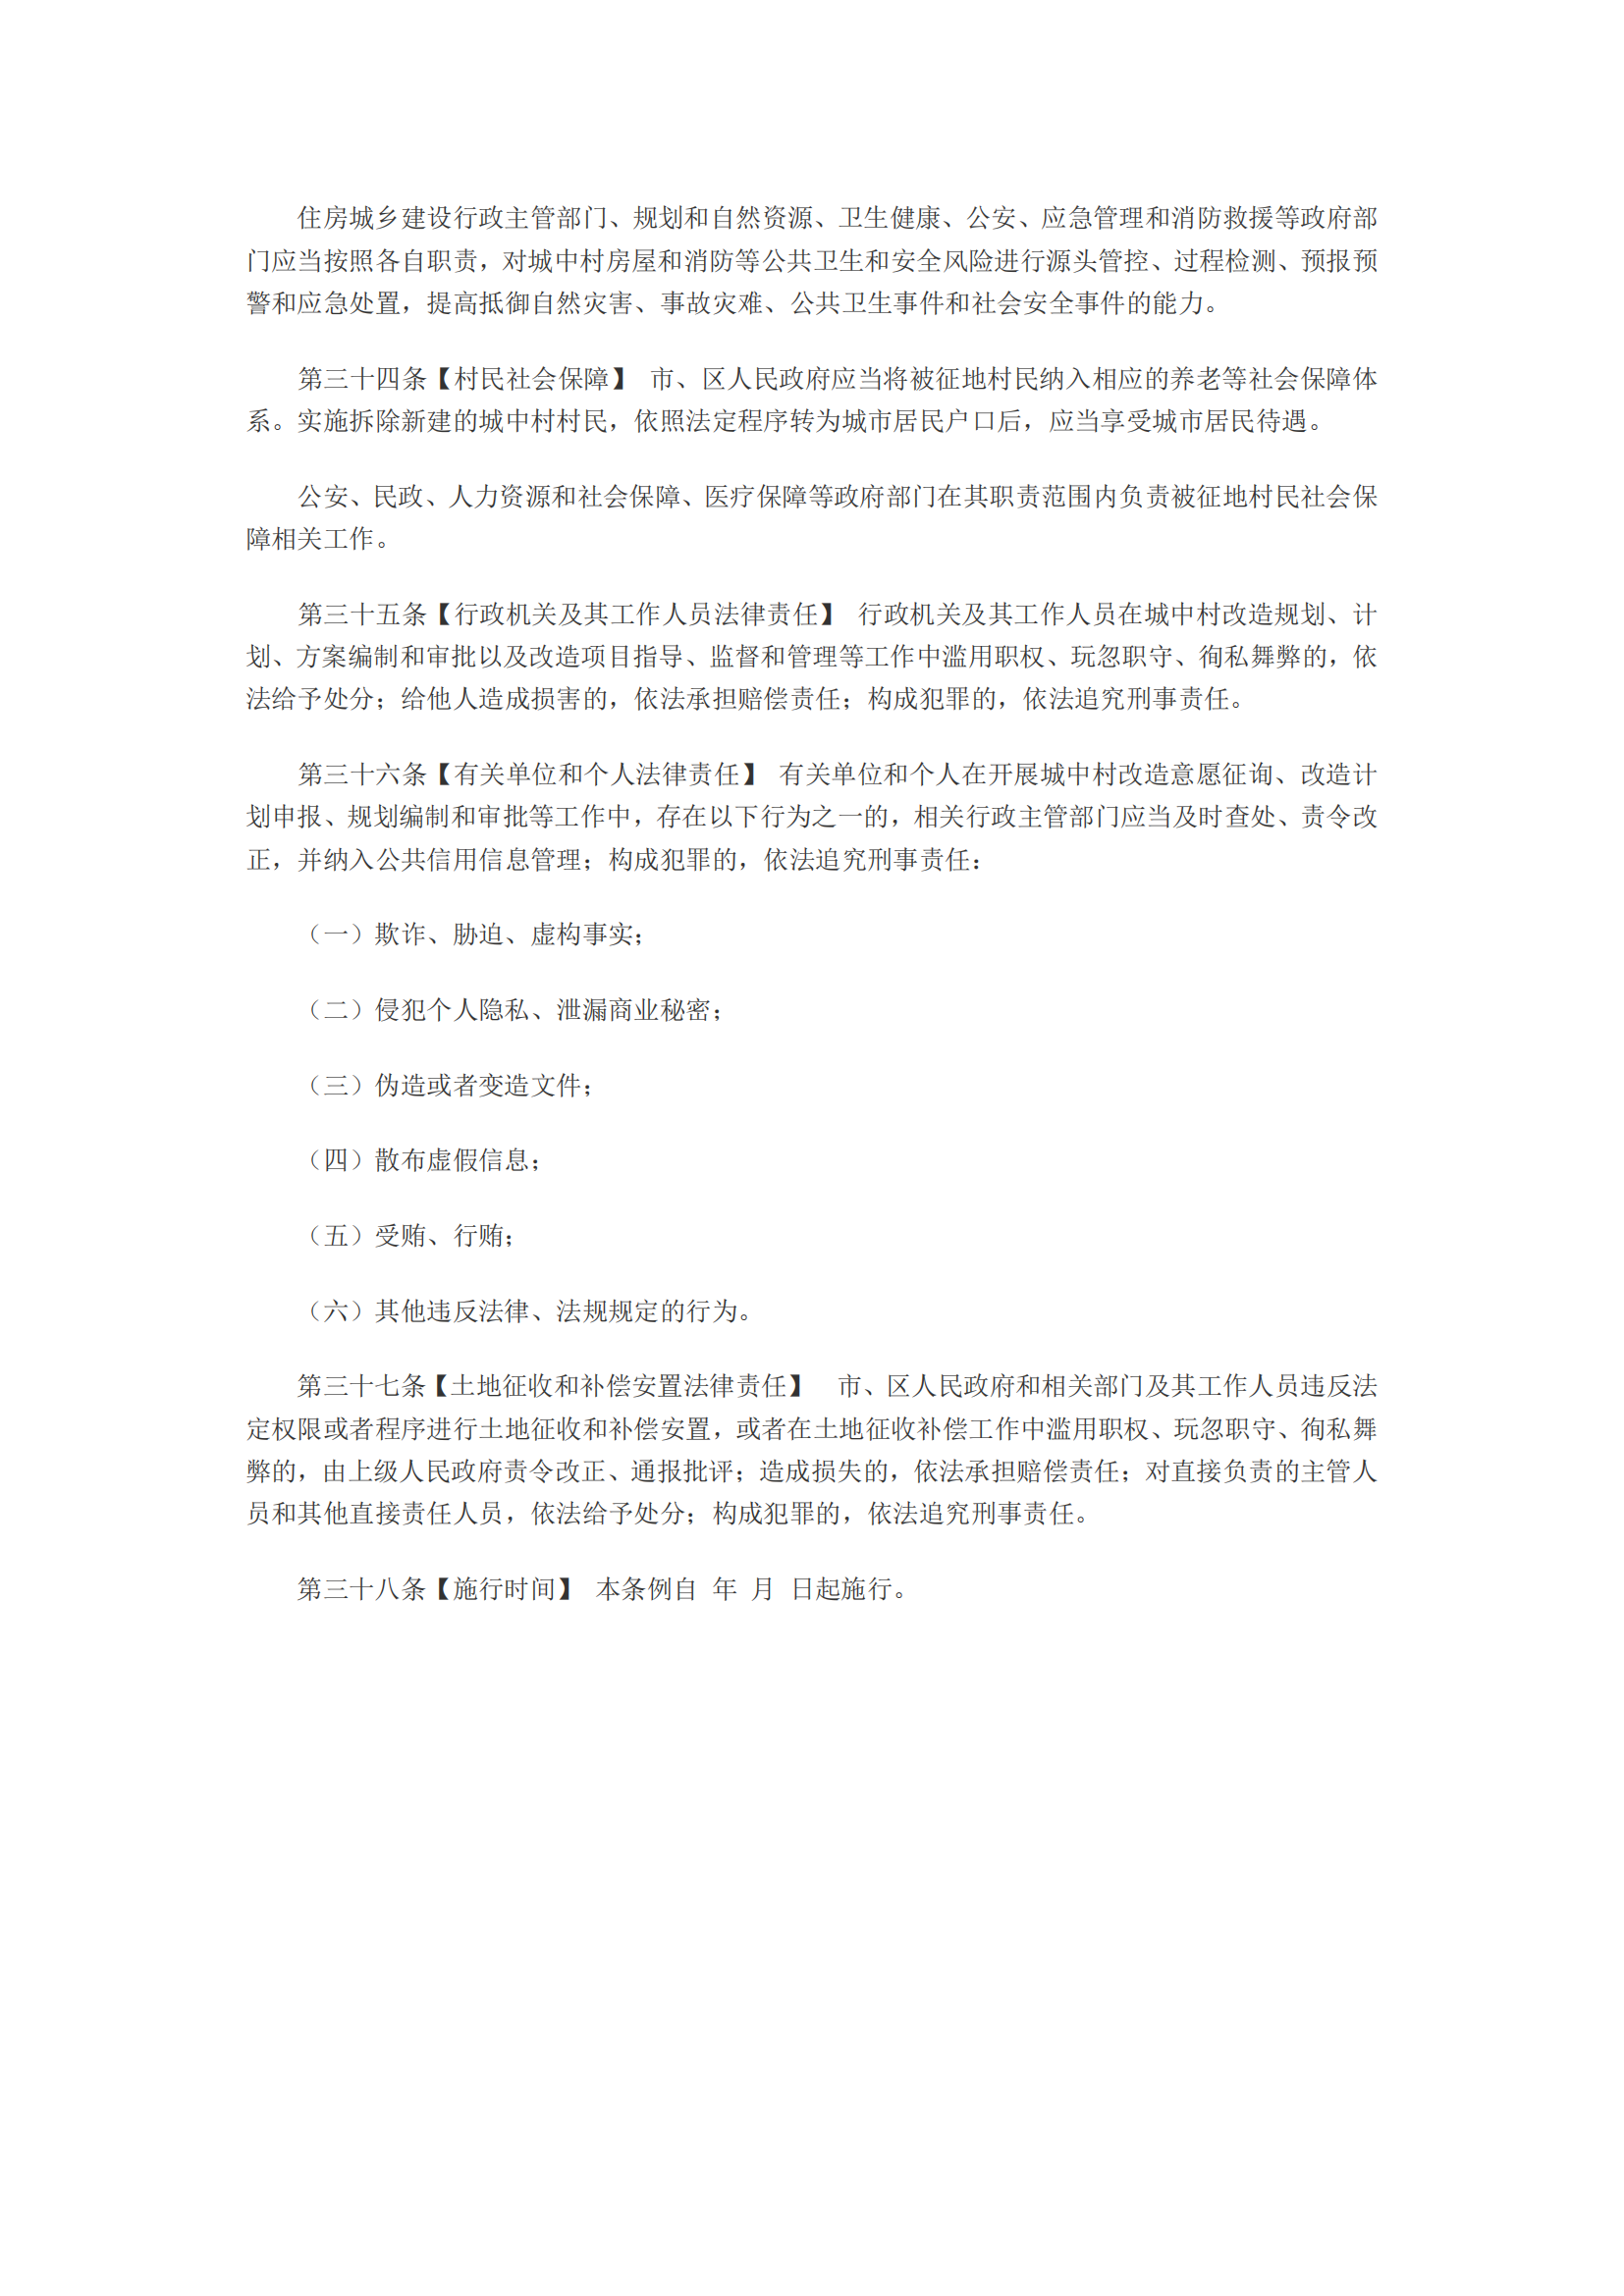 广州市城中村改造条例(征求意见稿，批注版)_06.png